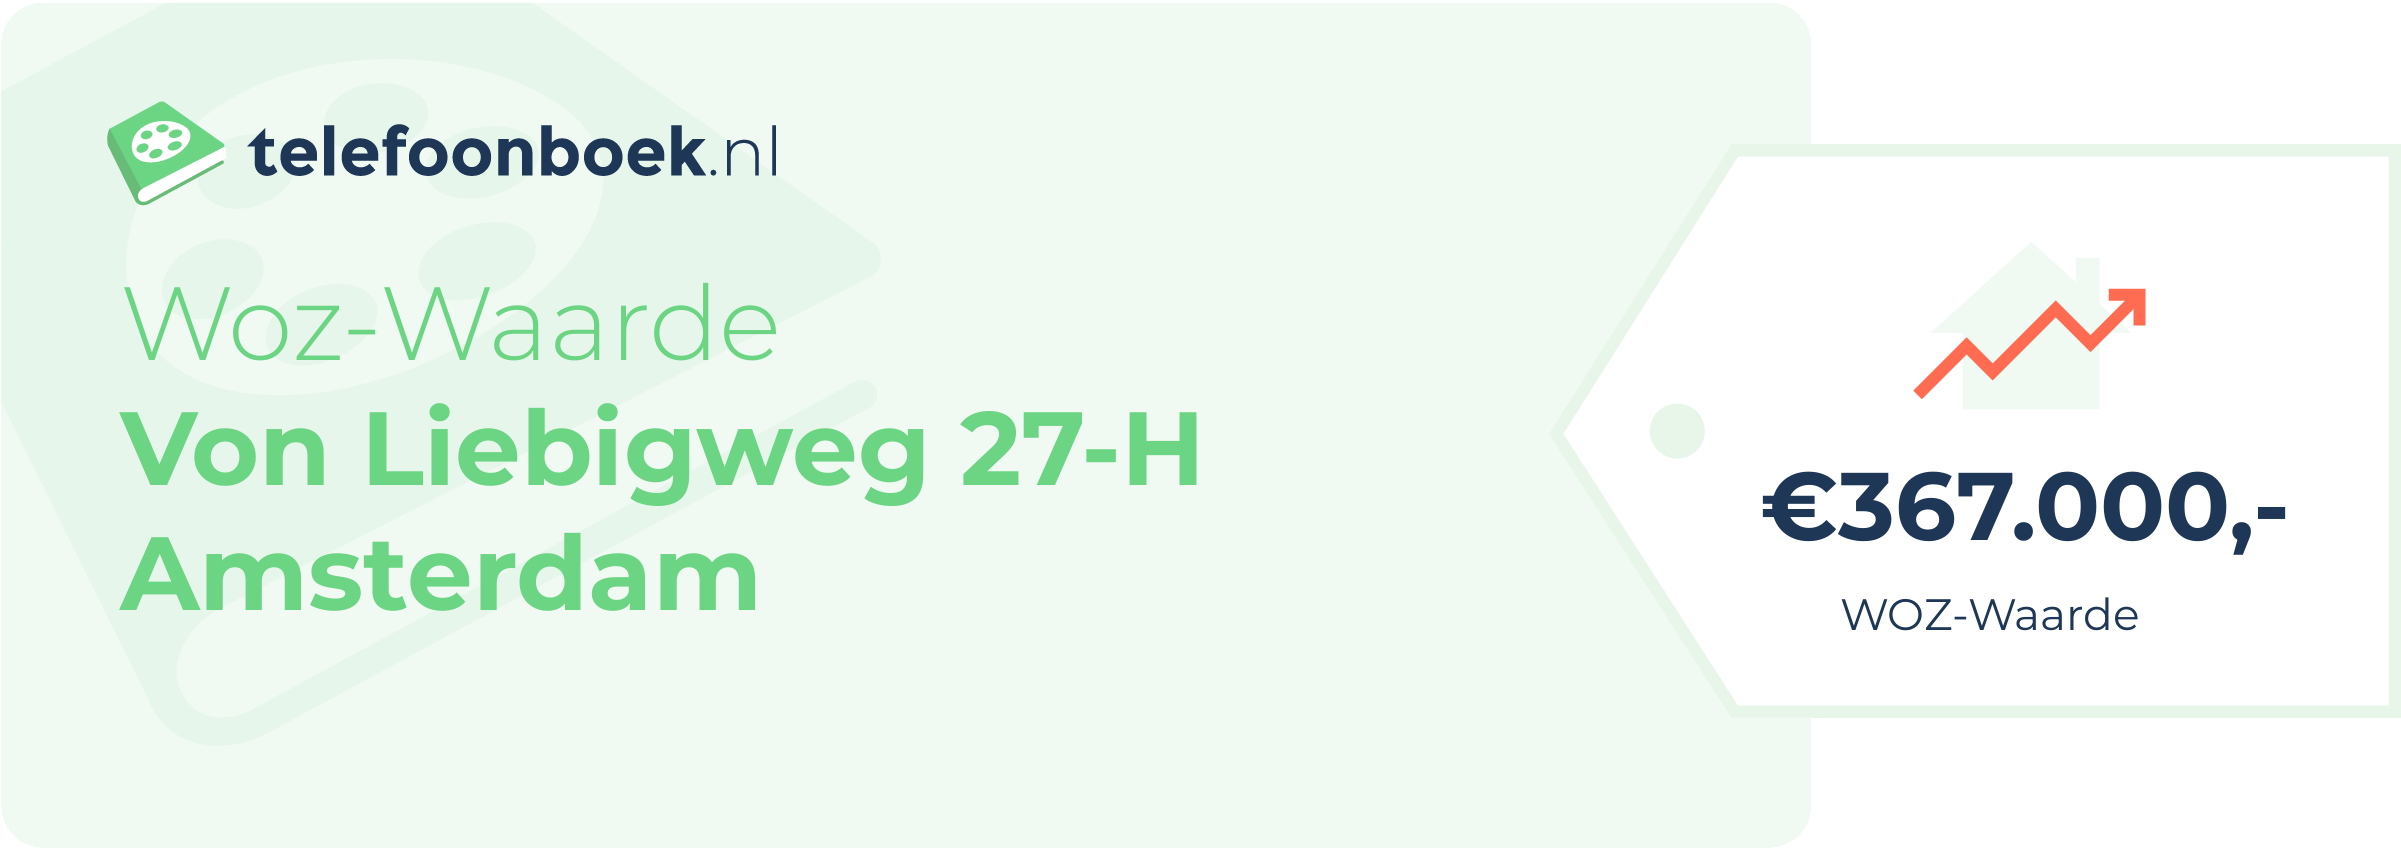 WOZ-waarde Von Liebigweg 27-H Amsterdam